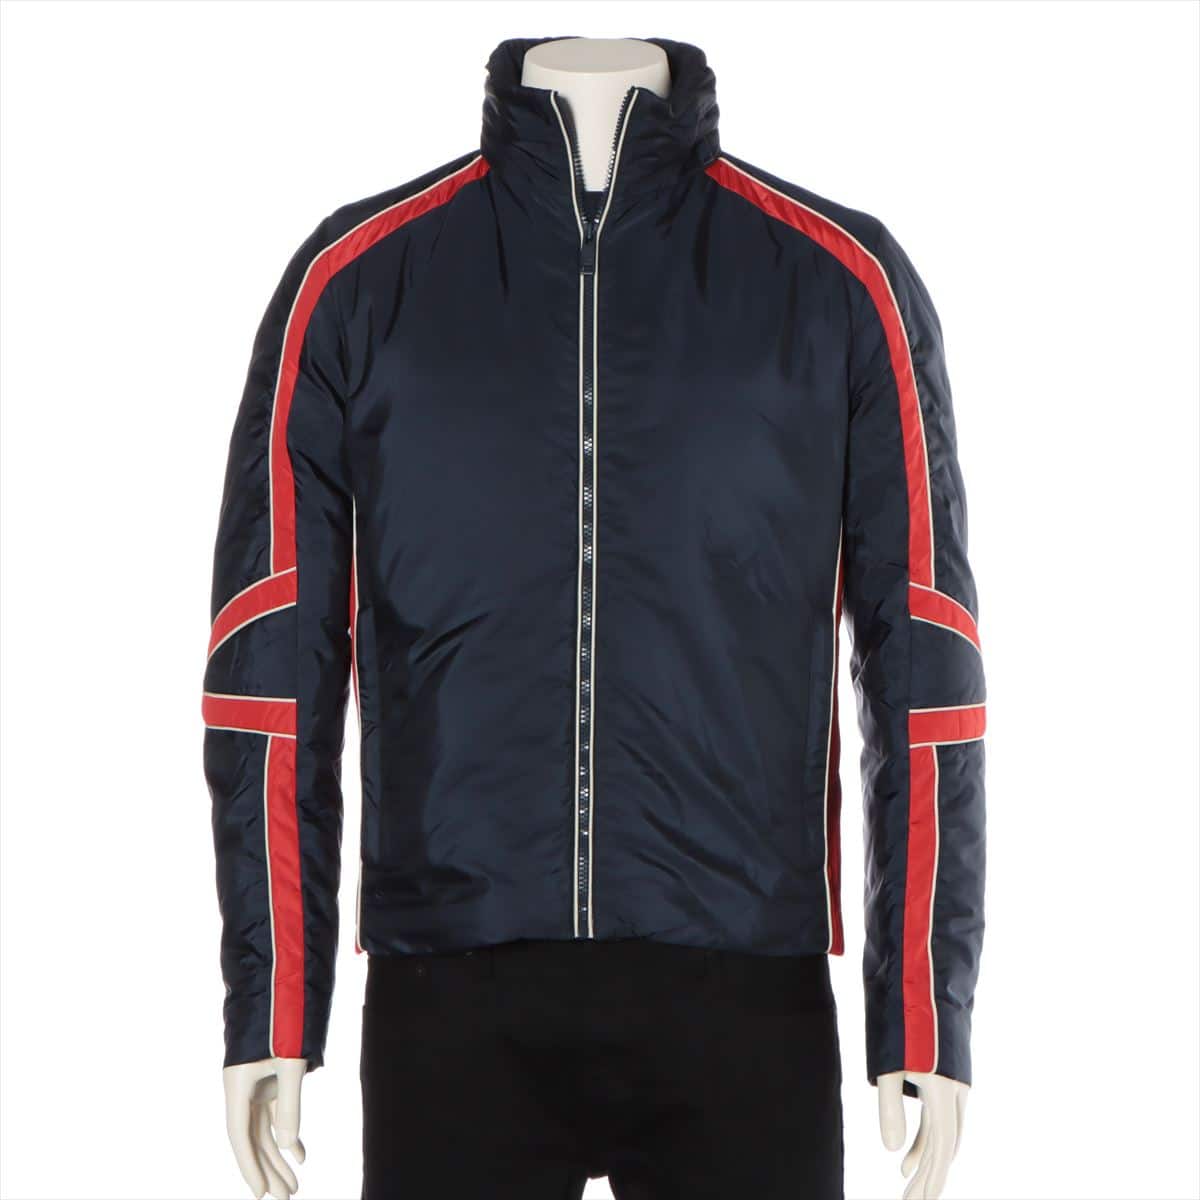 Prada Sport 15 years Nylon Insulated jacket 46 Men's Navy x red